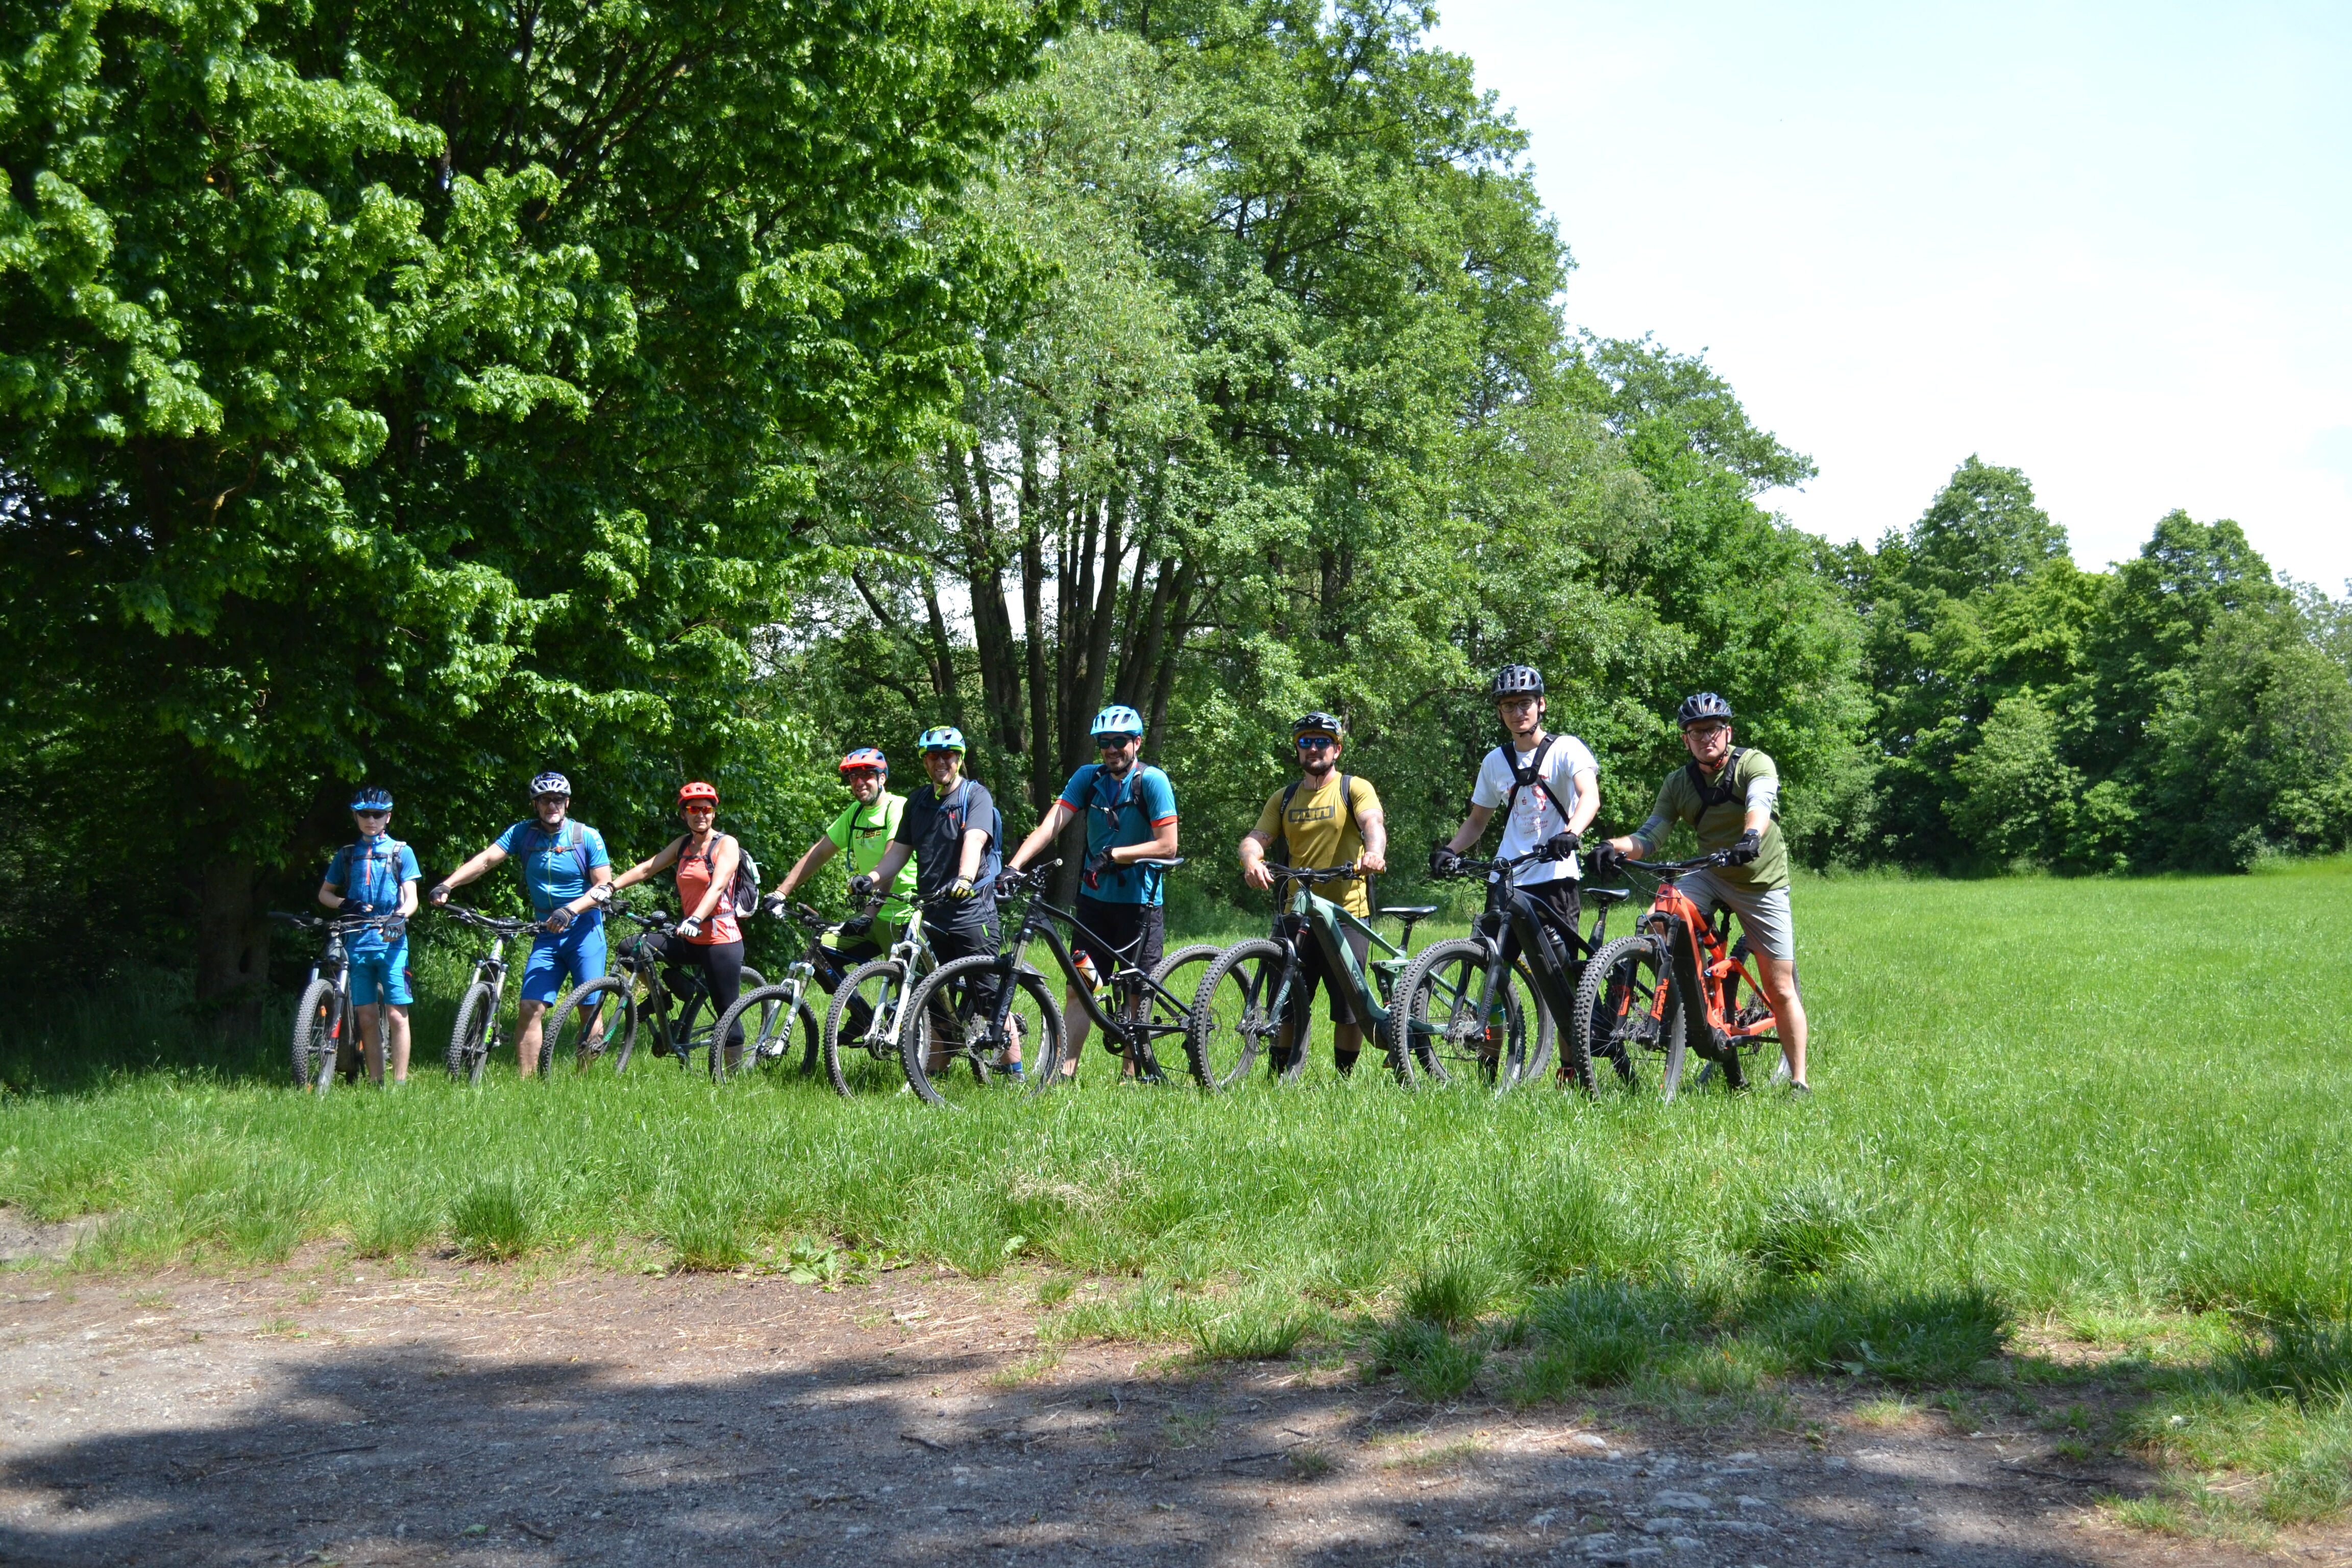 Mit dem Mountainbike im Obermainâ€¢Jura: Die Tour Bike & Fish bietet am 2. Juli kulinarische Genüsse, Landschaftserlebnisse und die ein oder andere sp